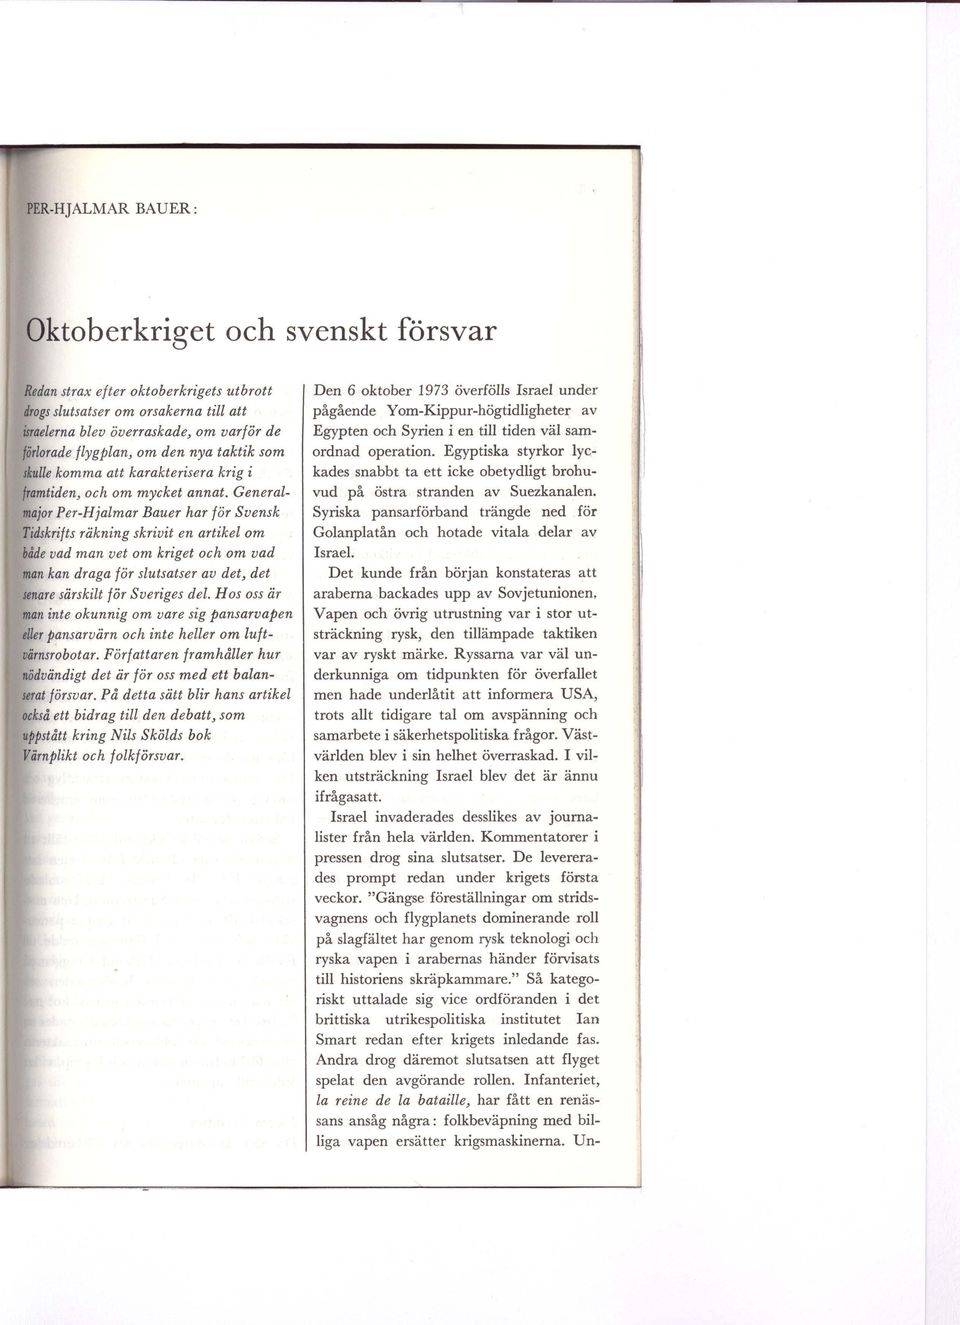 Generalmajor Per-Hjalmar Bauer har för Svensk Tidskrifts räkning skrivit en artikel om både vad man vet om kriget och om vad man kan draga för slutsatser av det, det senare särskilt för Sveriges del.